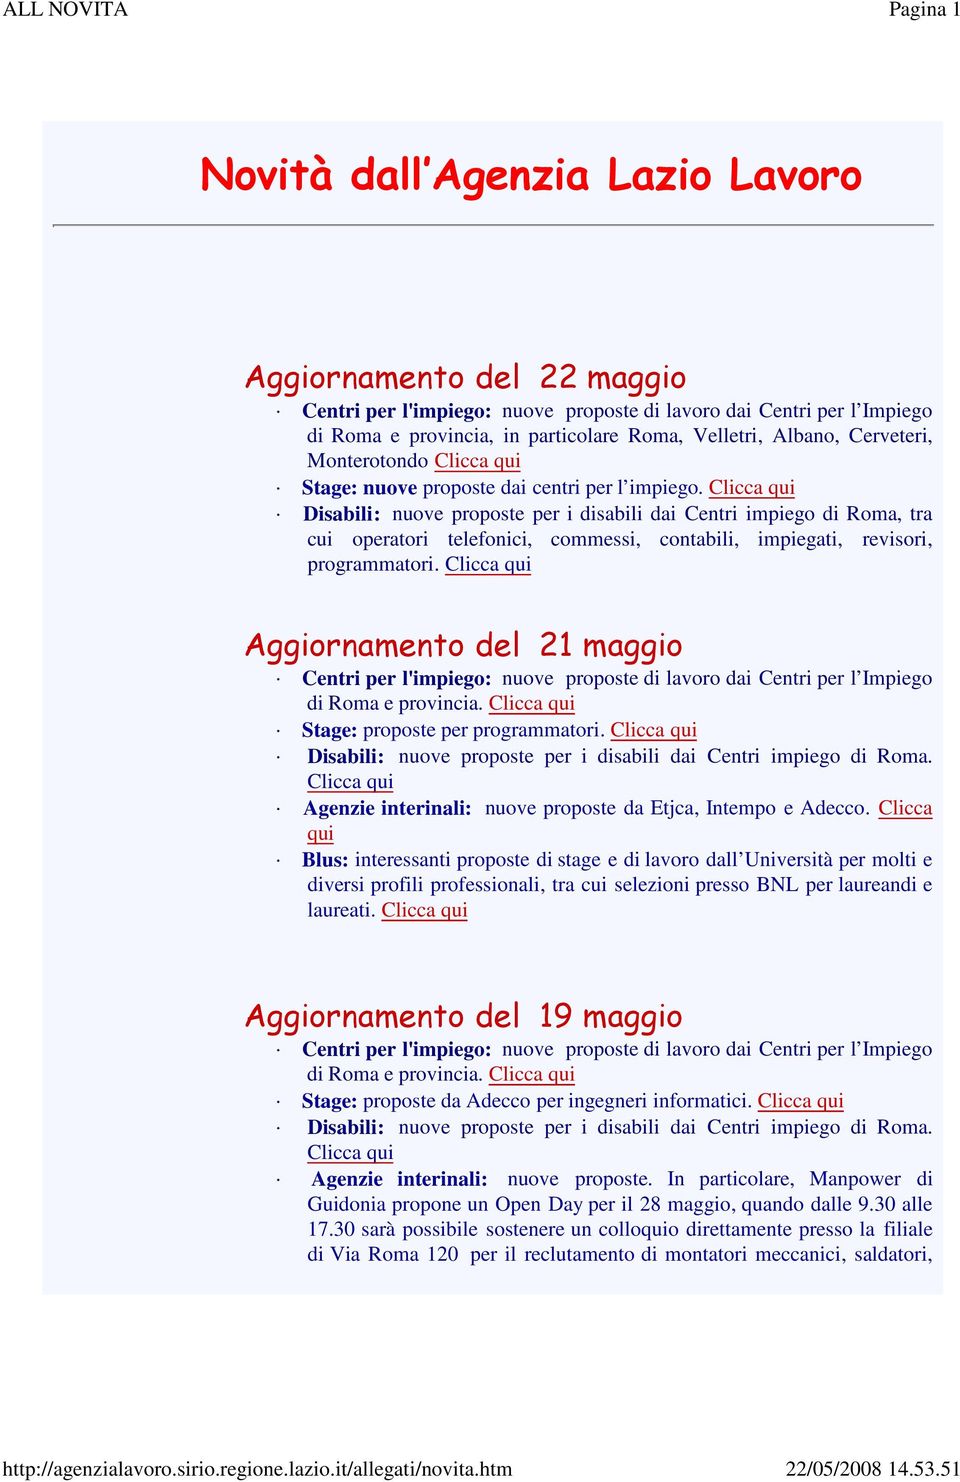 Aggiornamento del 21 maggio di Roma e provincia. Stage: proposte per programmatori. Agenzie interinali: nuove proposte da Etjca, Intempo e Adecco.